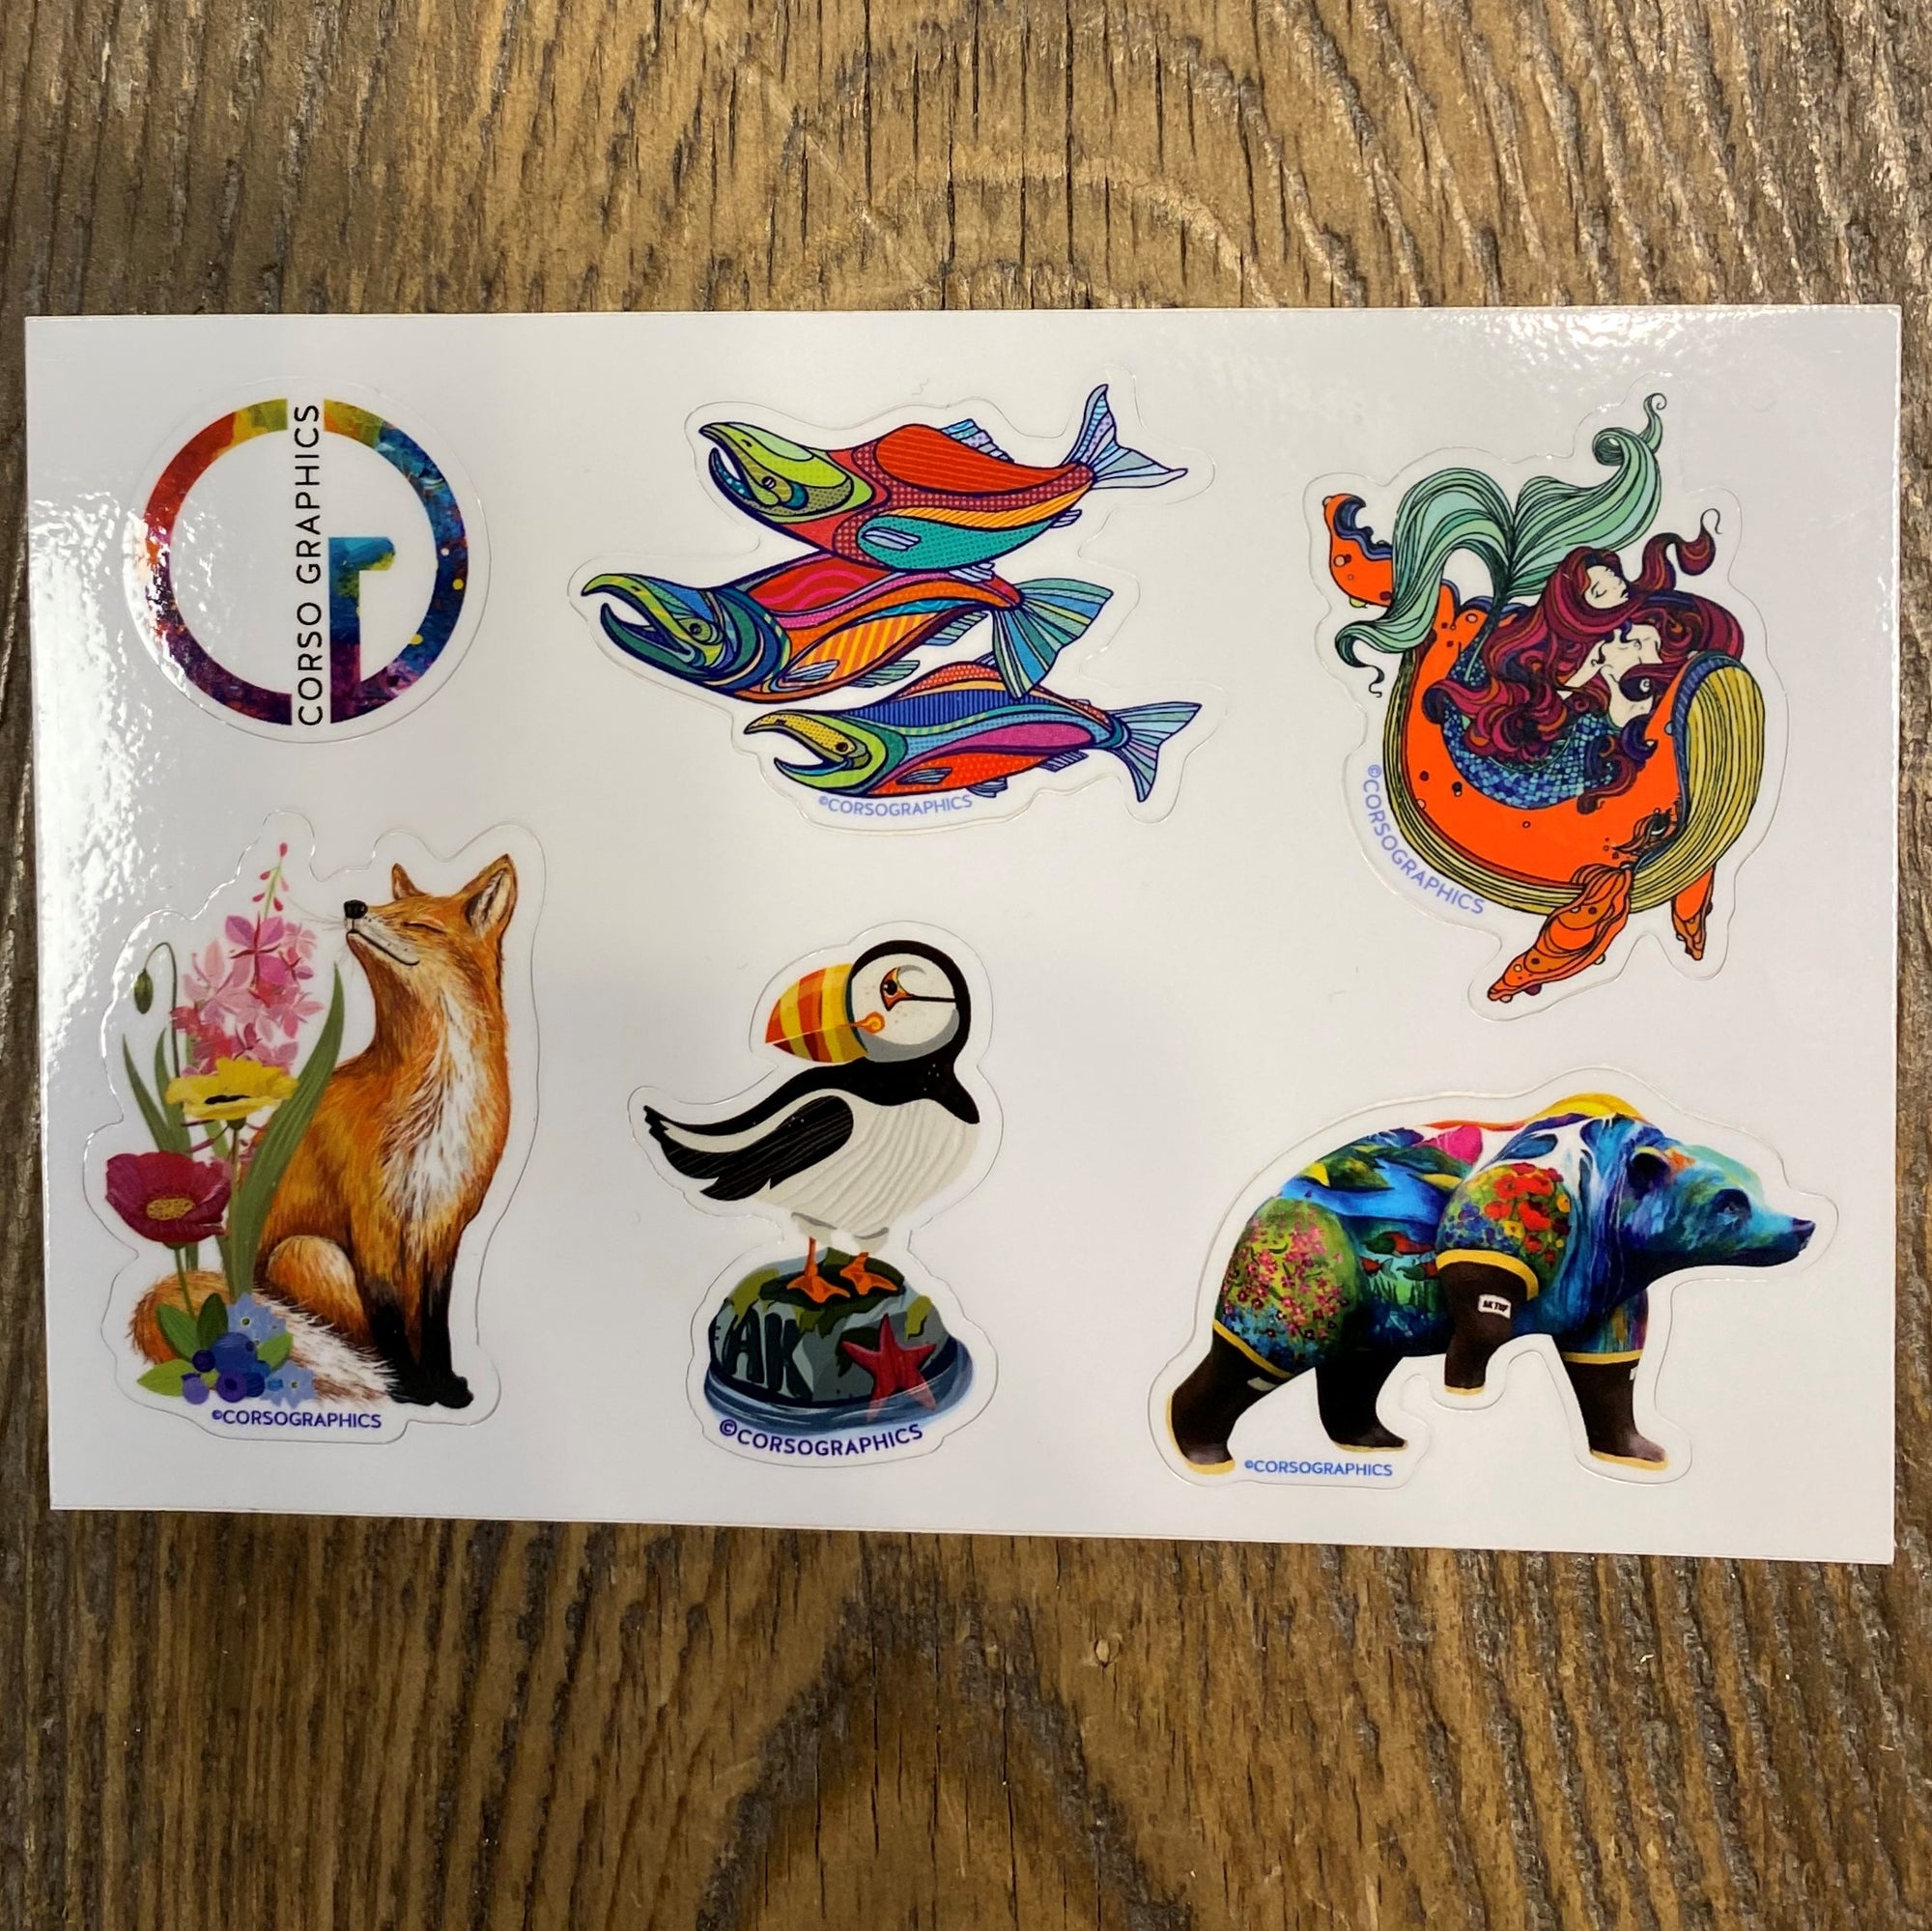 Animals Sticker Sheet